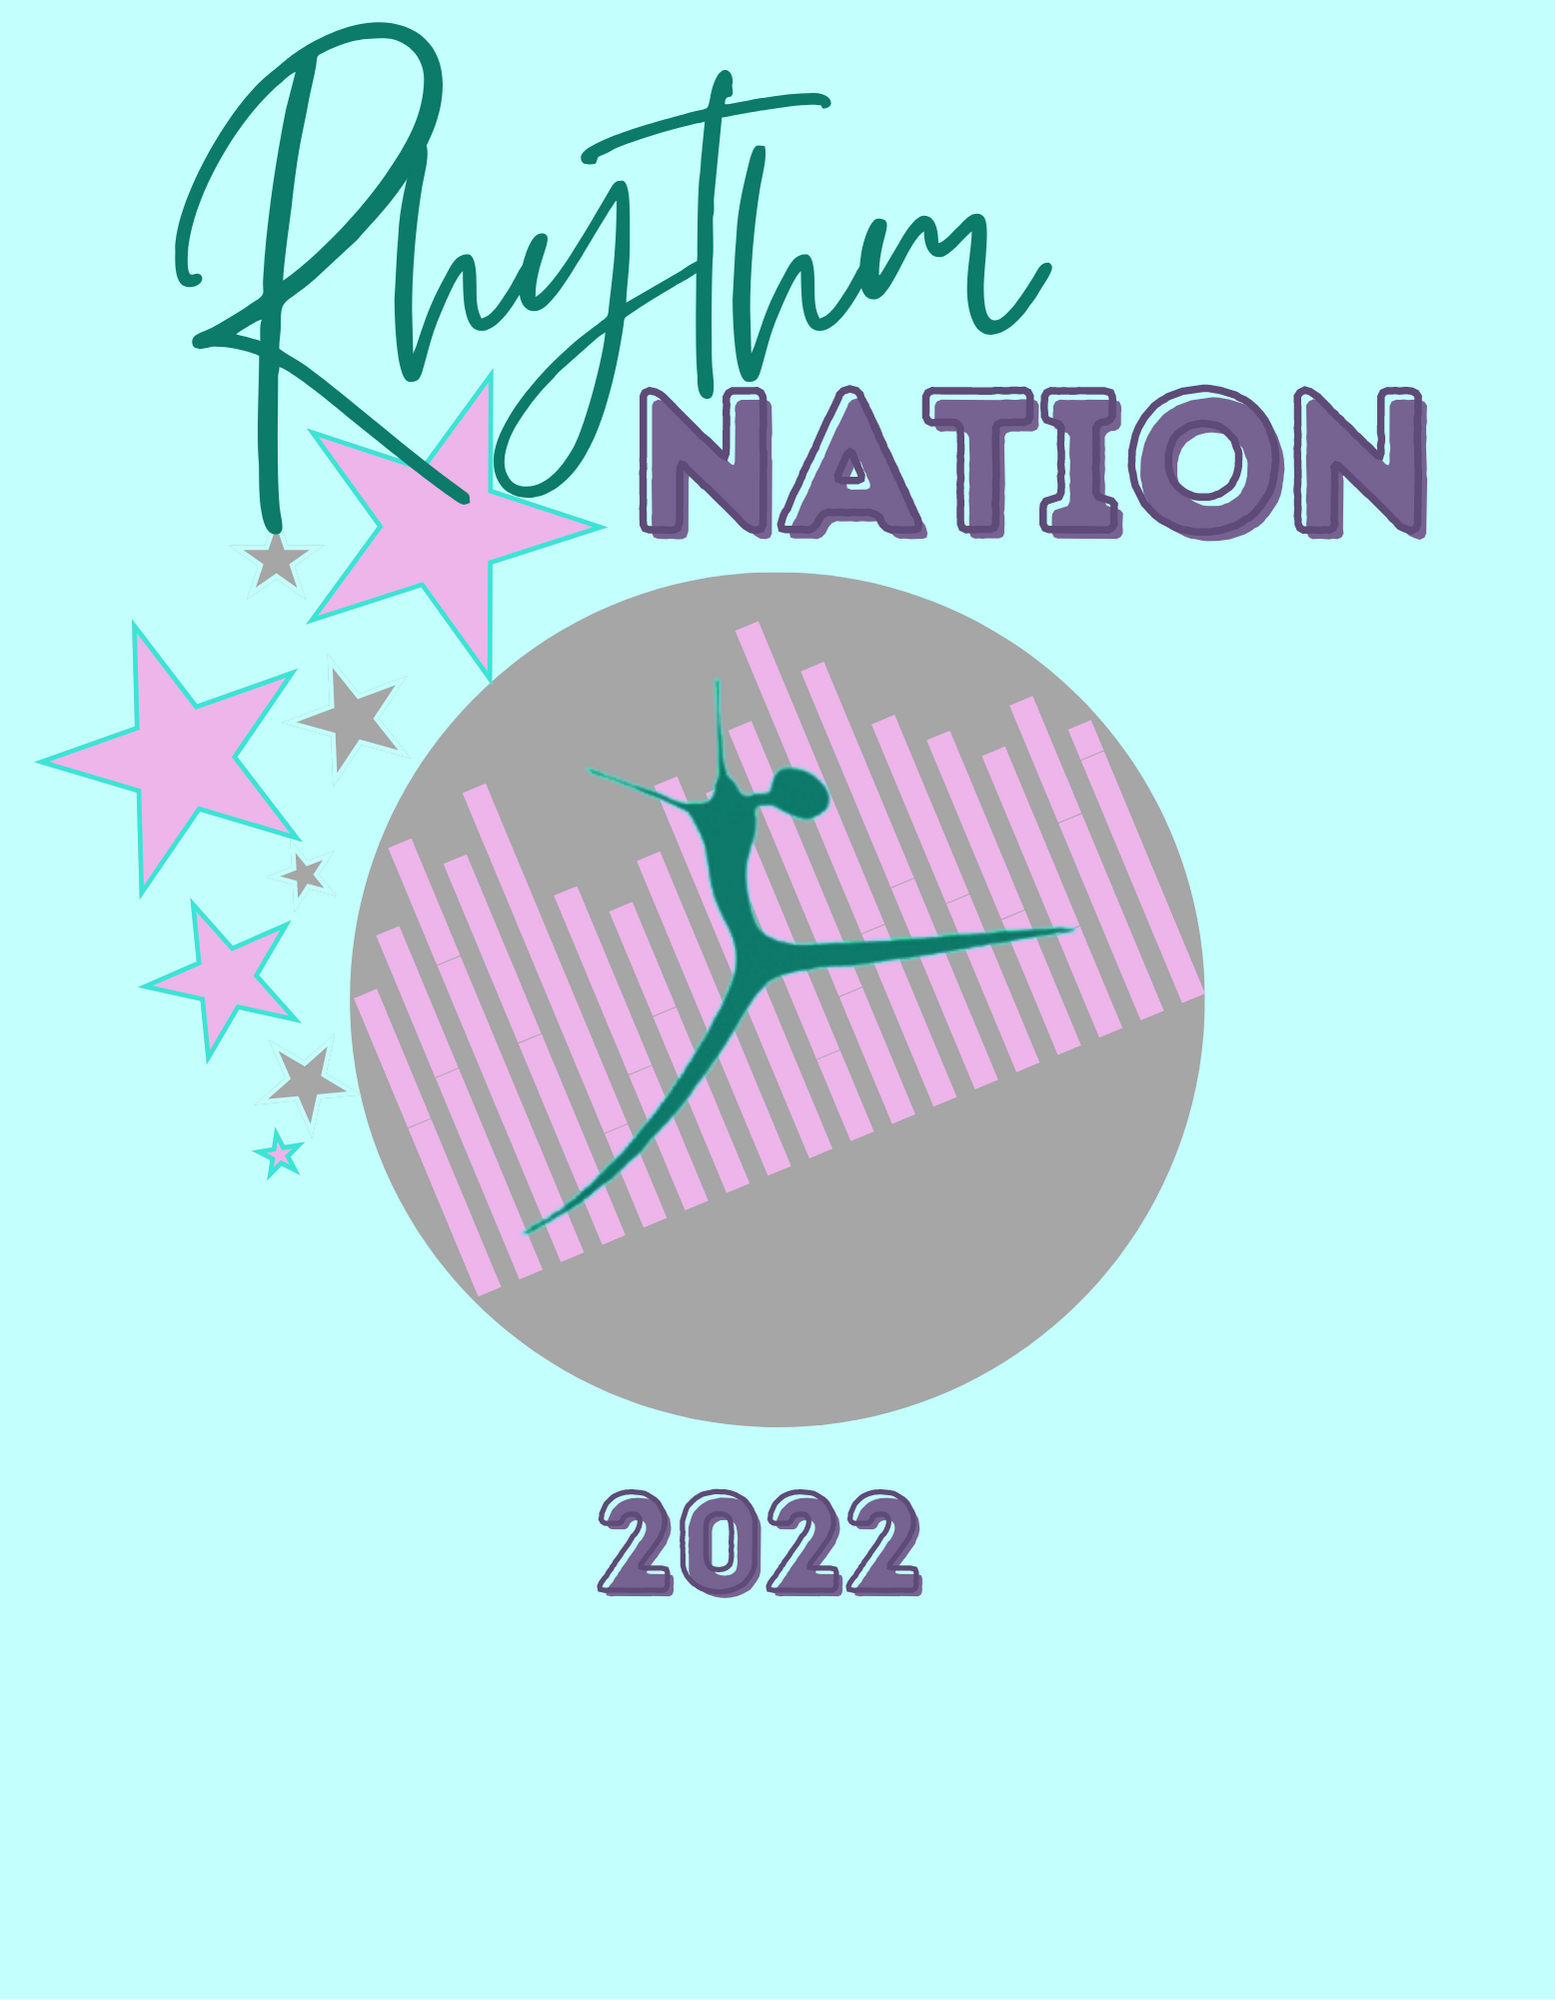 RHYTHM NATION LOGO (2)